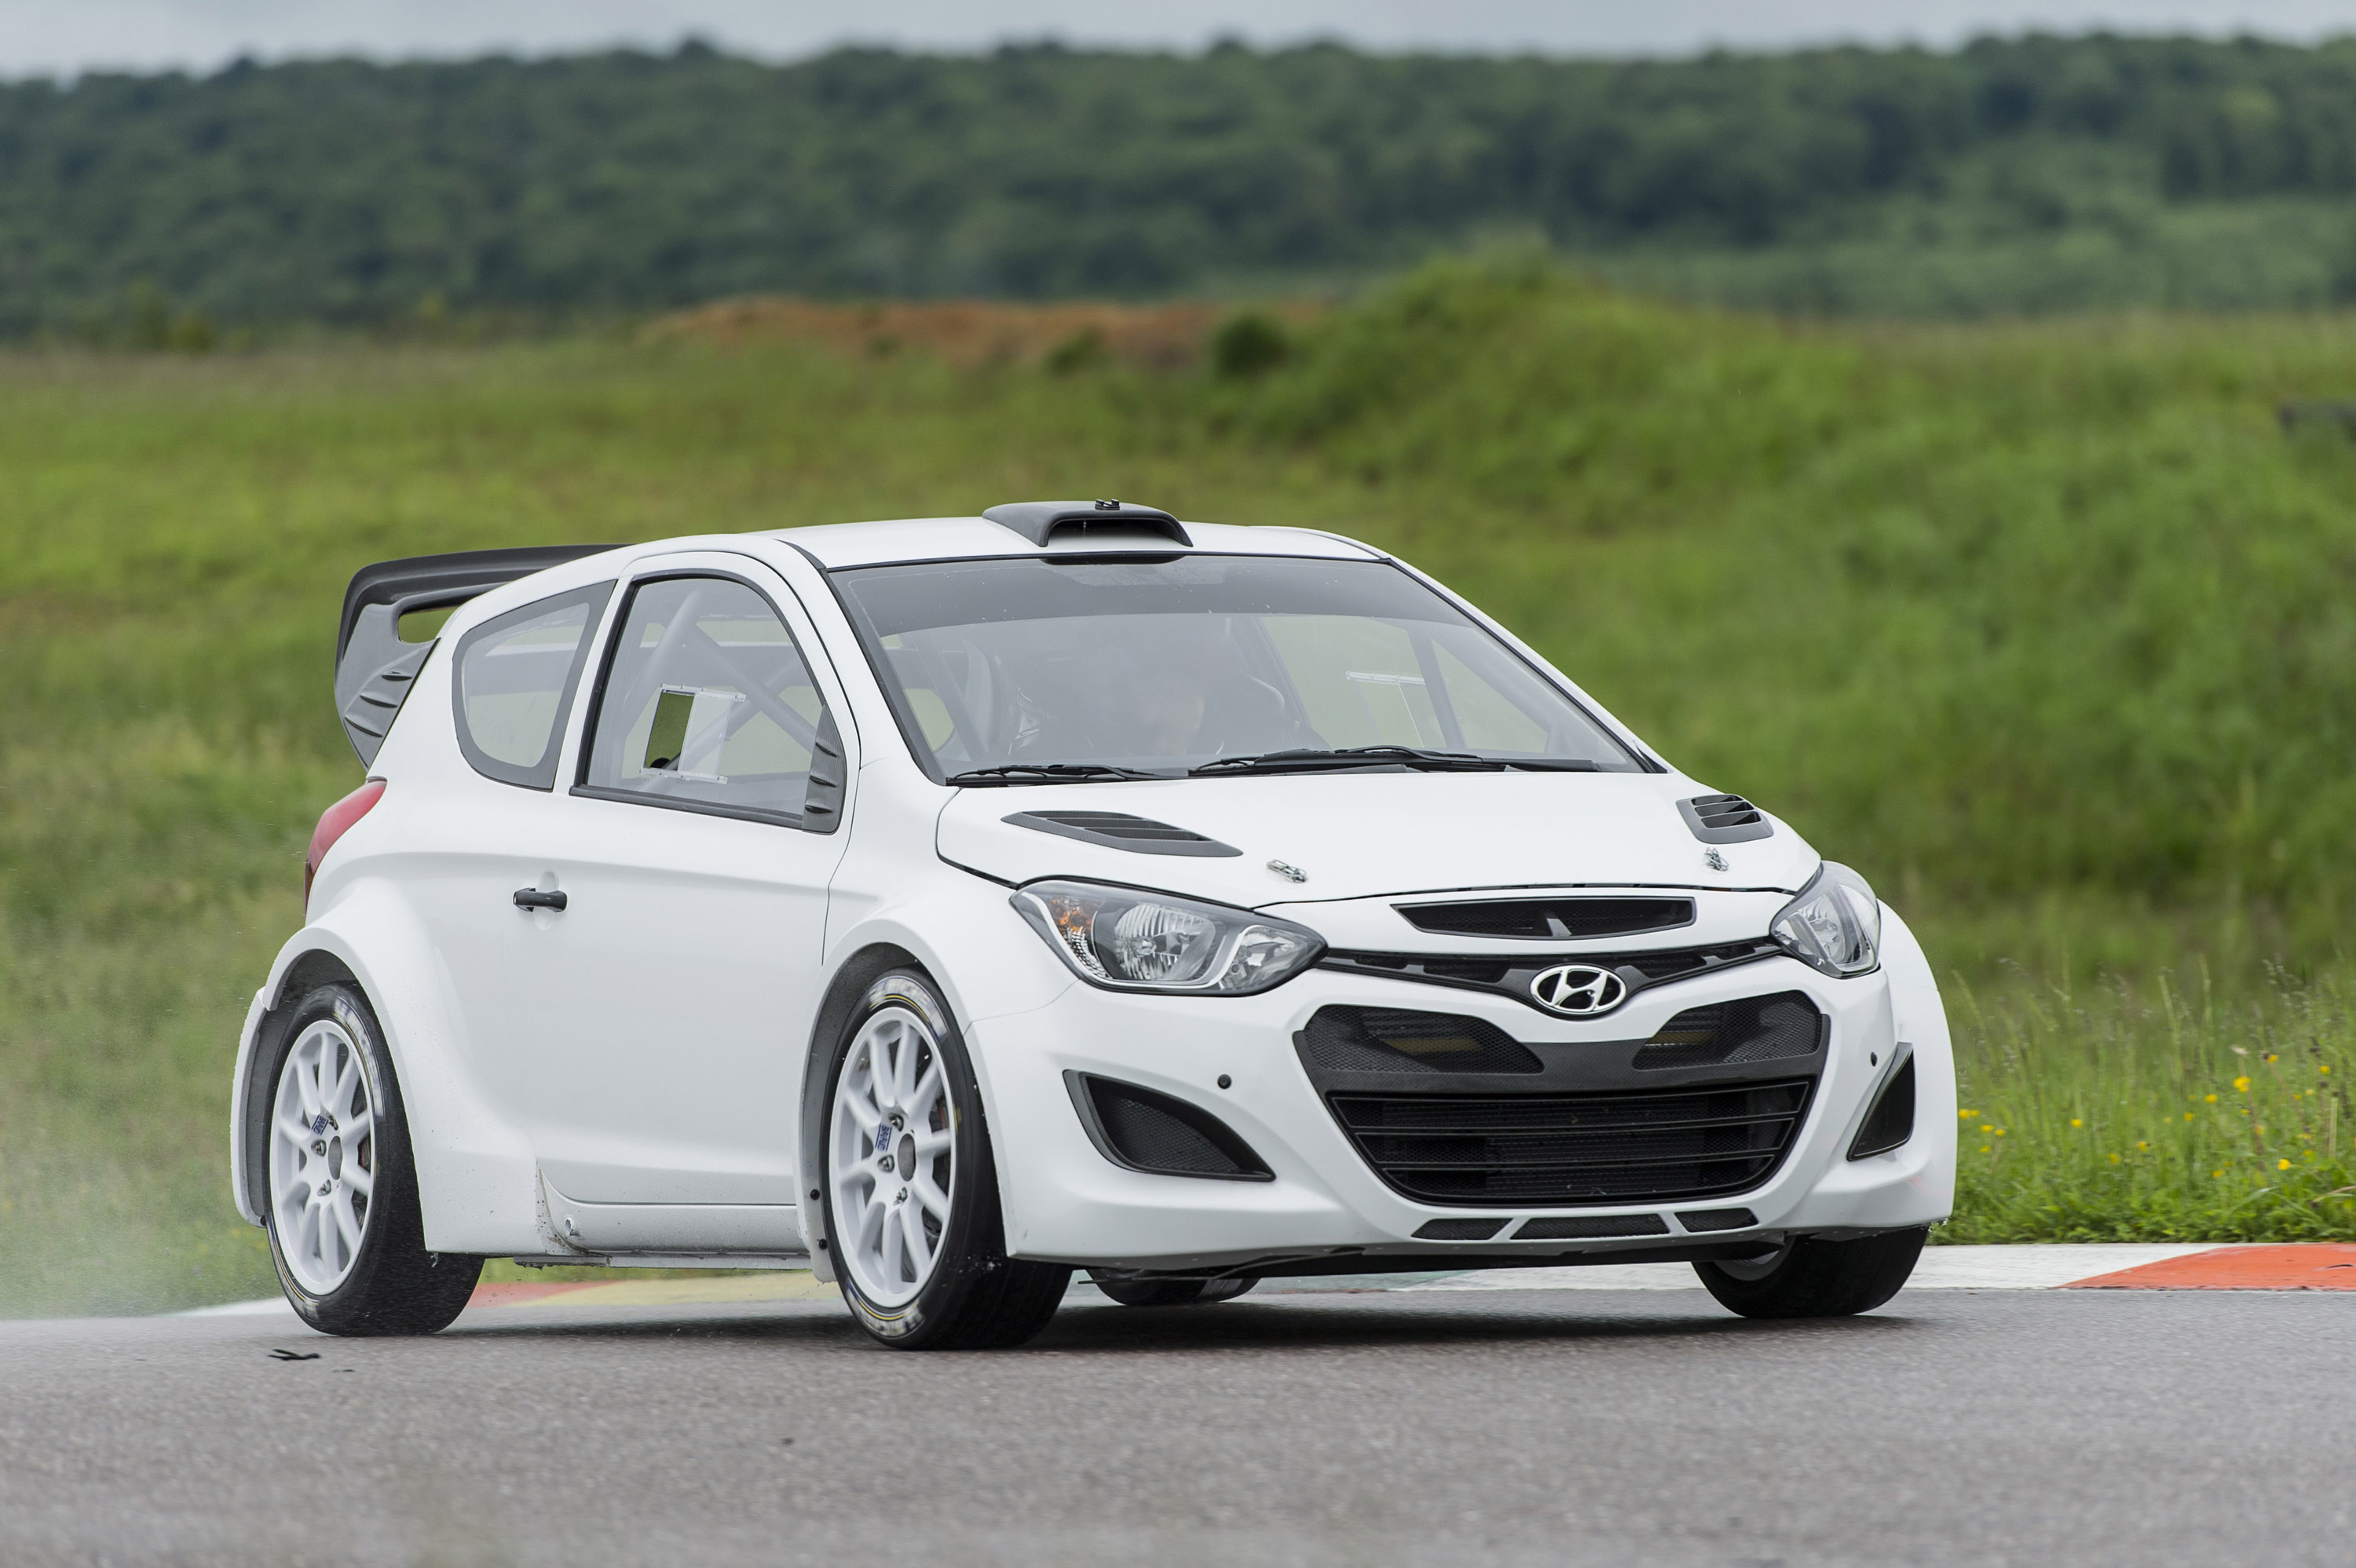 Hyundai i20 WRC Test Debut